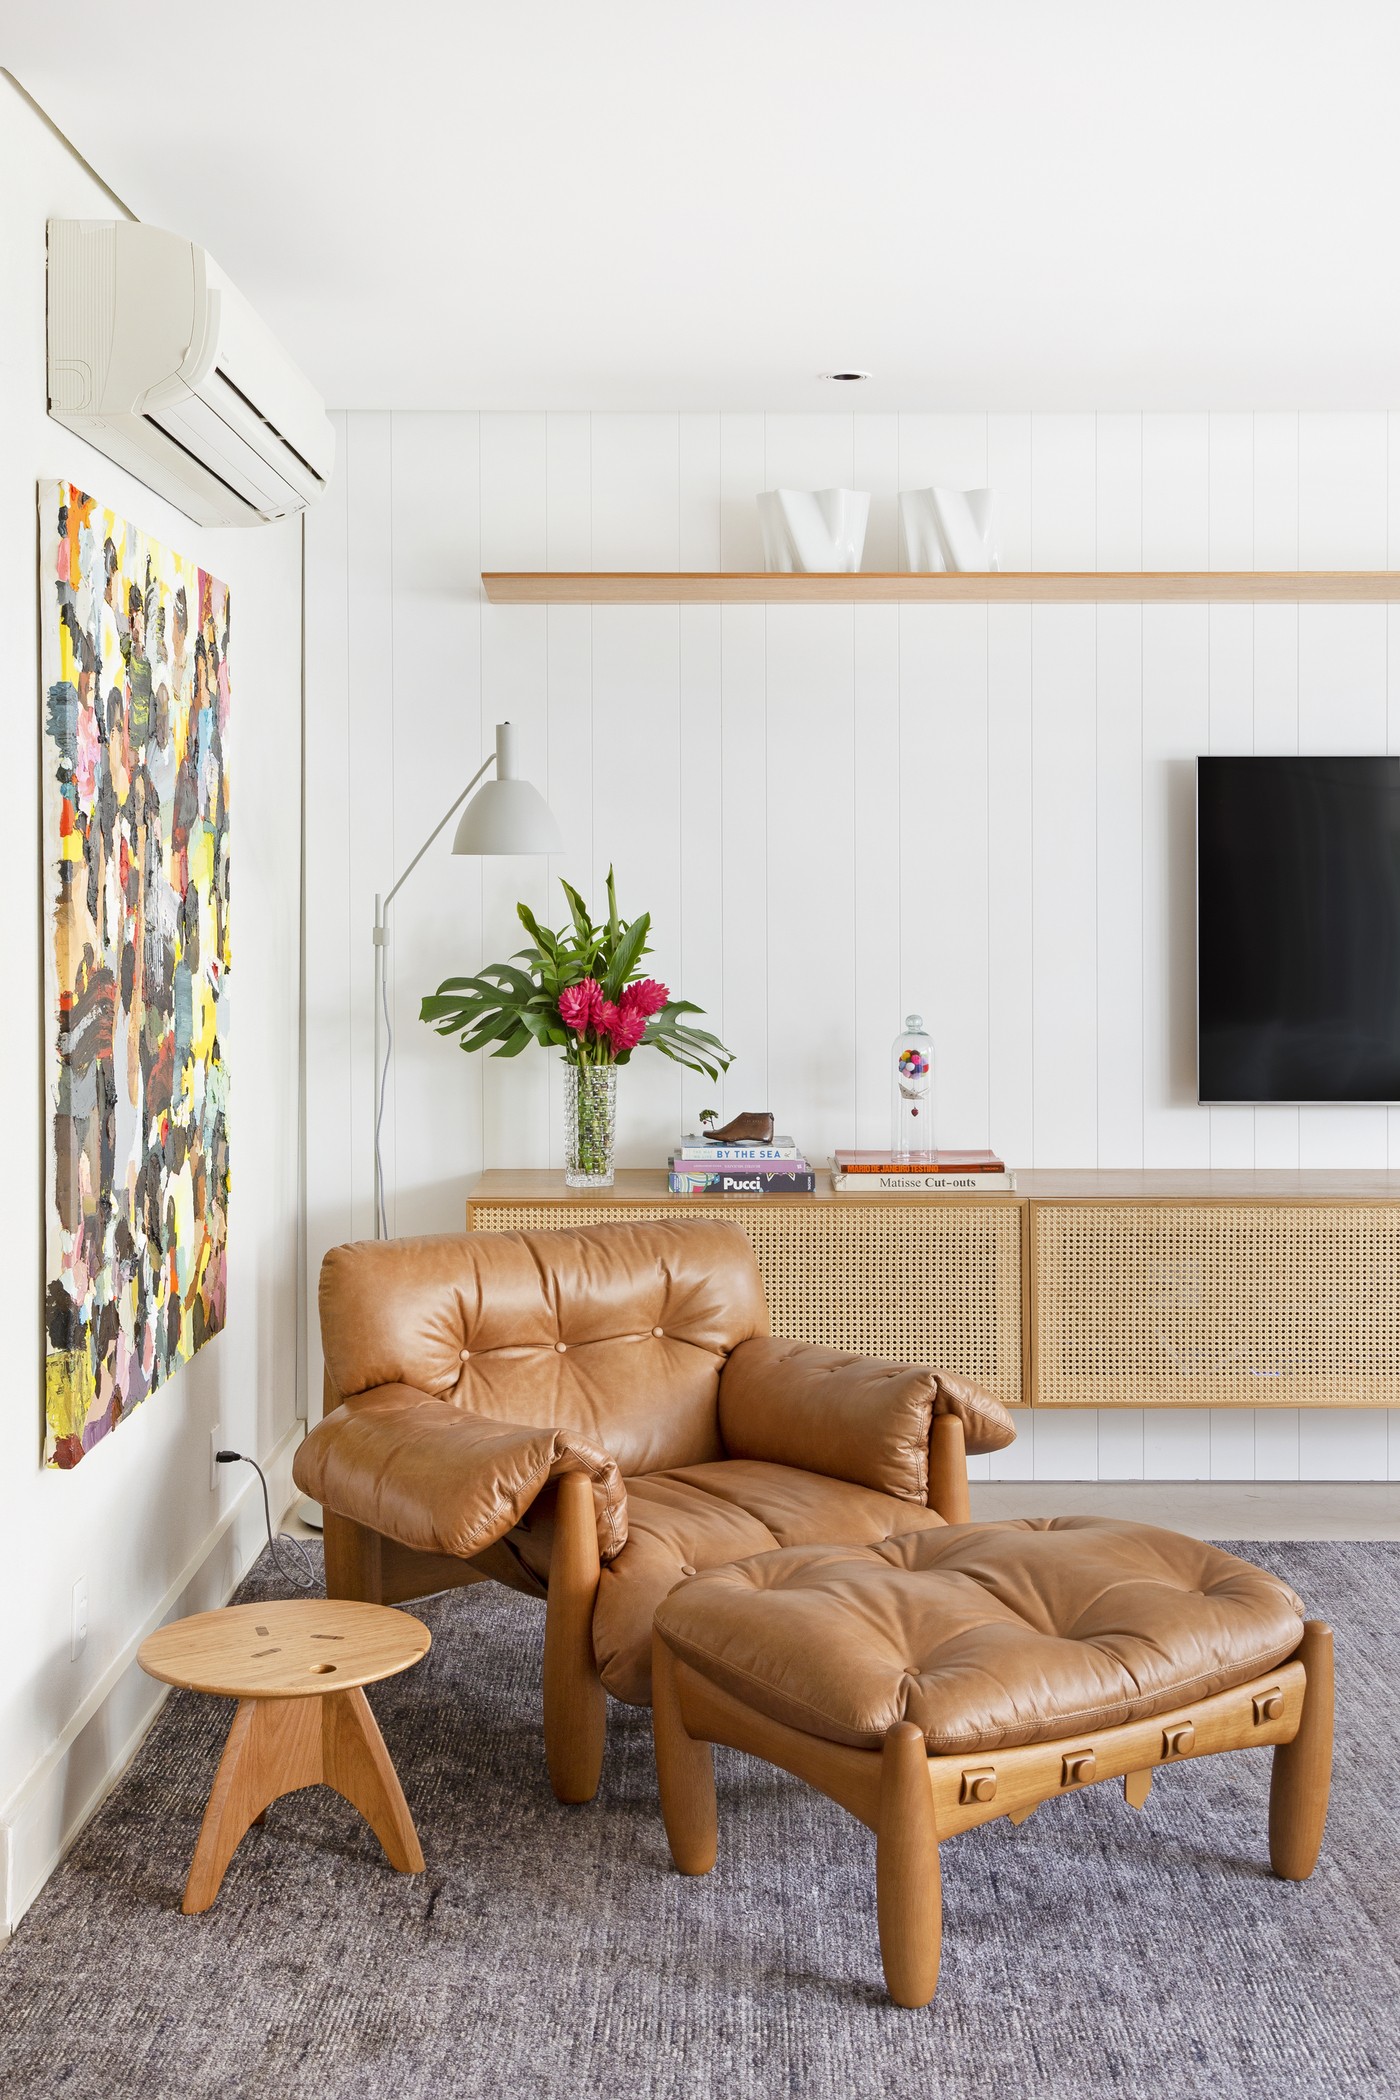 Décor do dia: sala de estar com decoração leve e móveis assinados por Sergio Rodrigues (Foto: Julia Ribeiro )